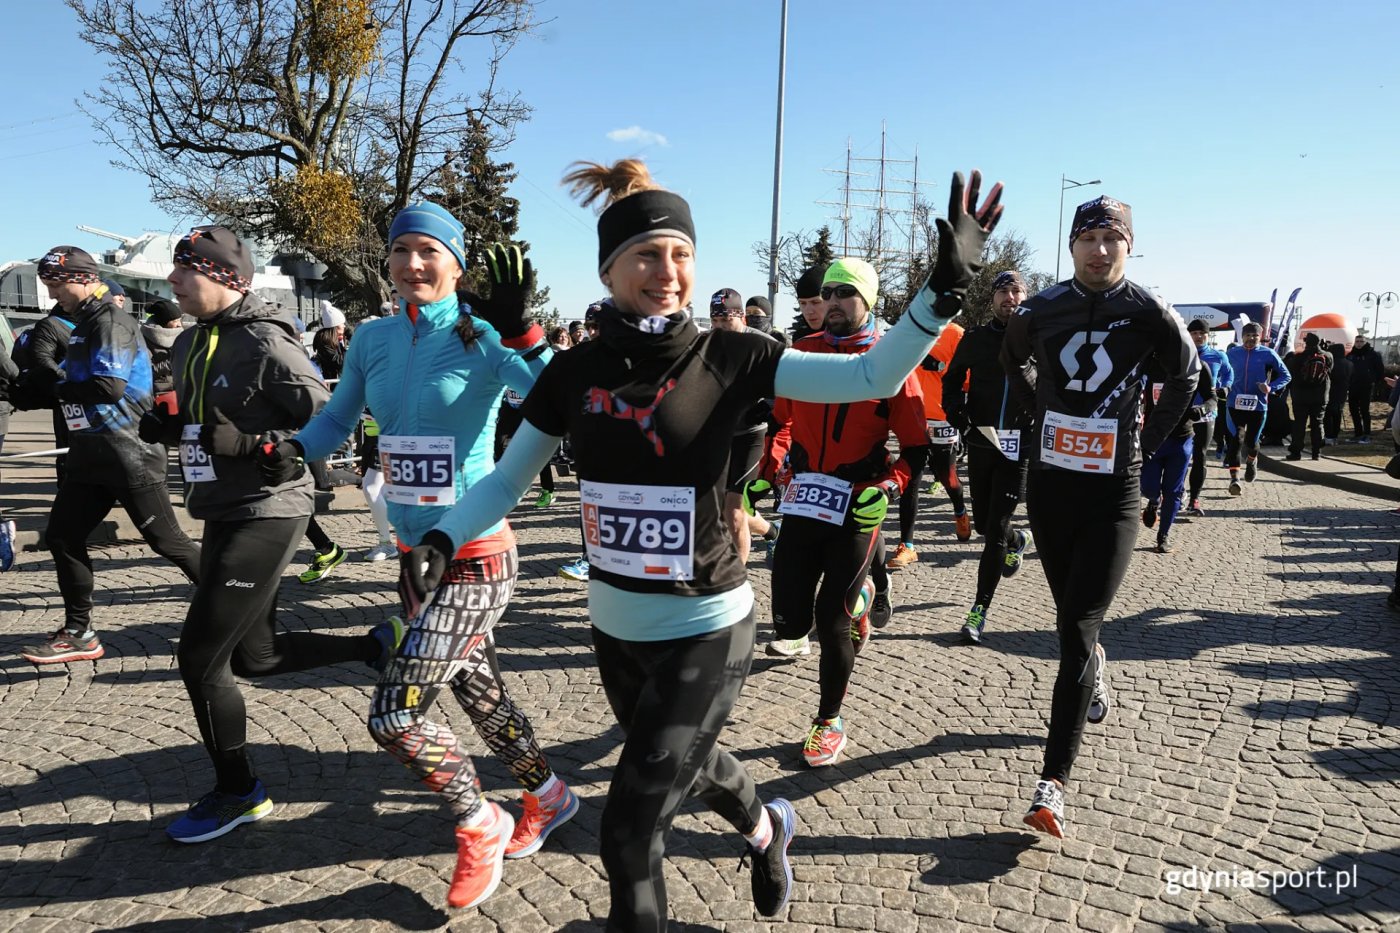 Biegacze na trasie półmaratonu w Gdyni (fot. gdyniasport.pl)